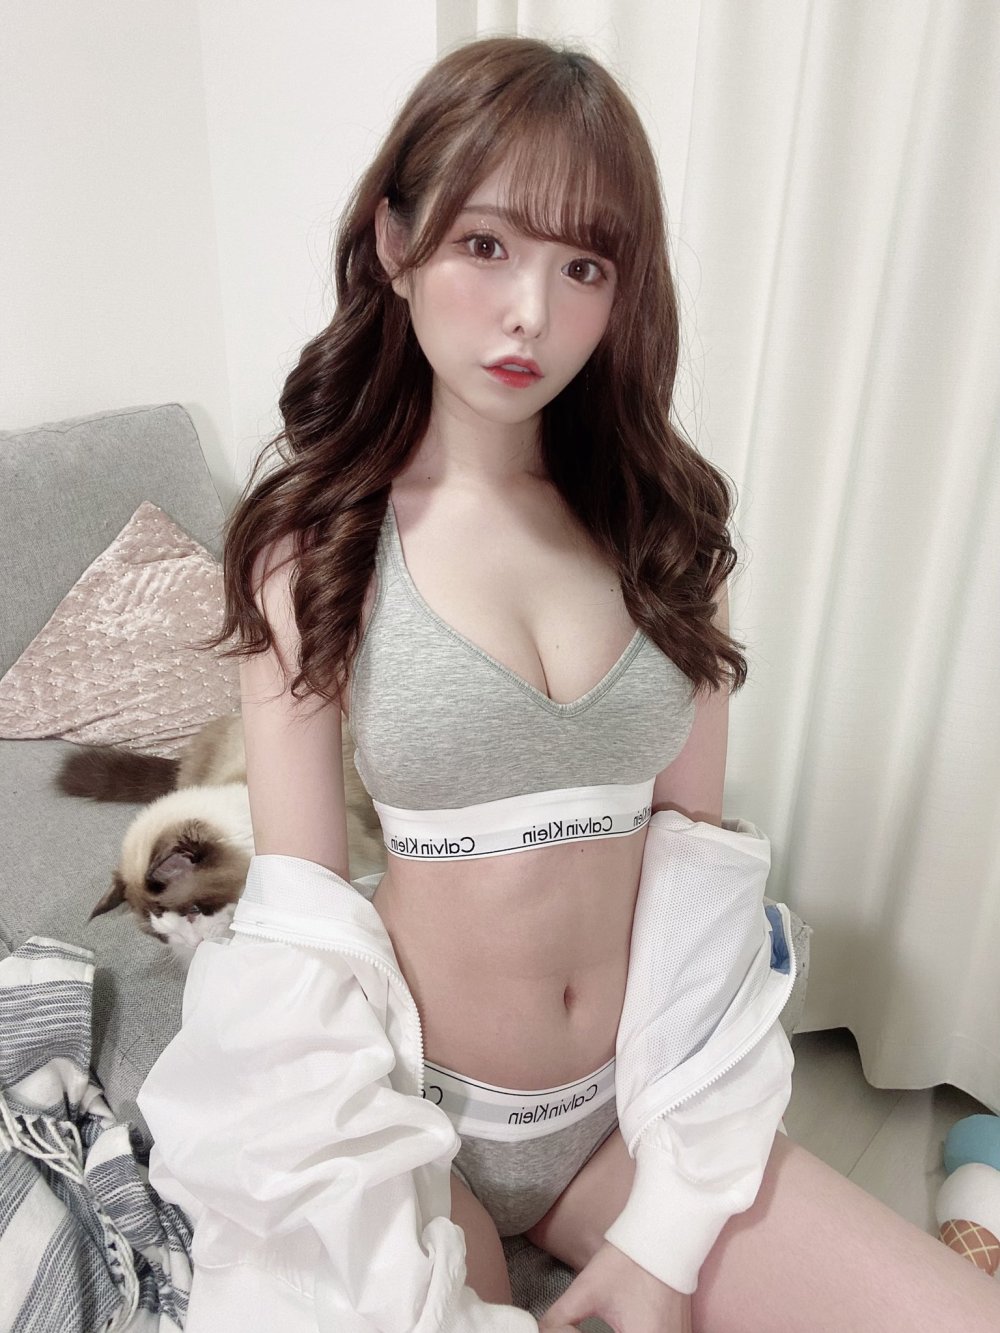 Arina Hashimoto Sexy and Hottest Photos , Latest Pics